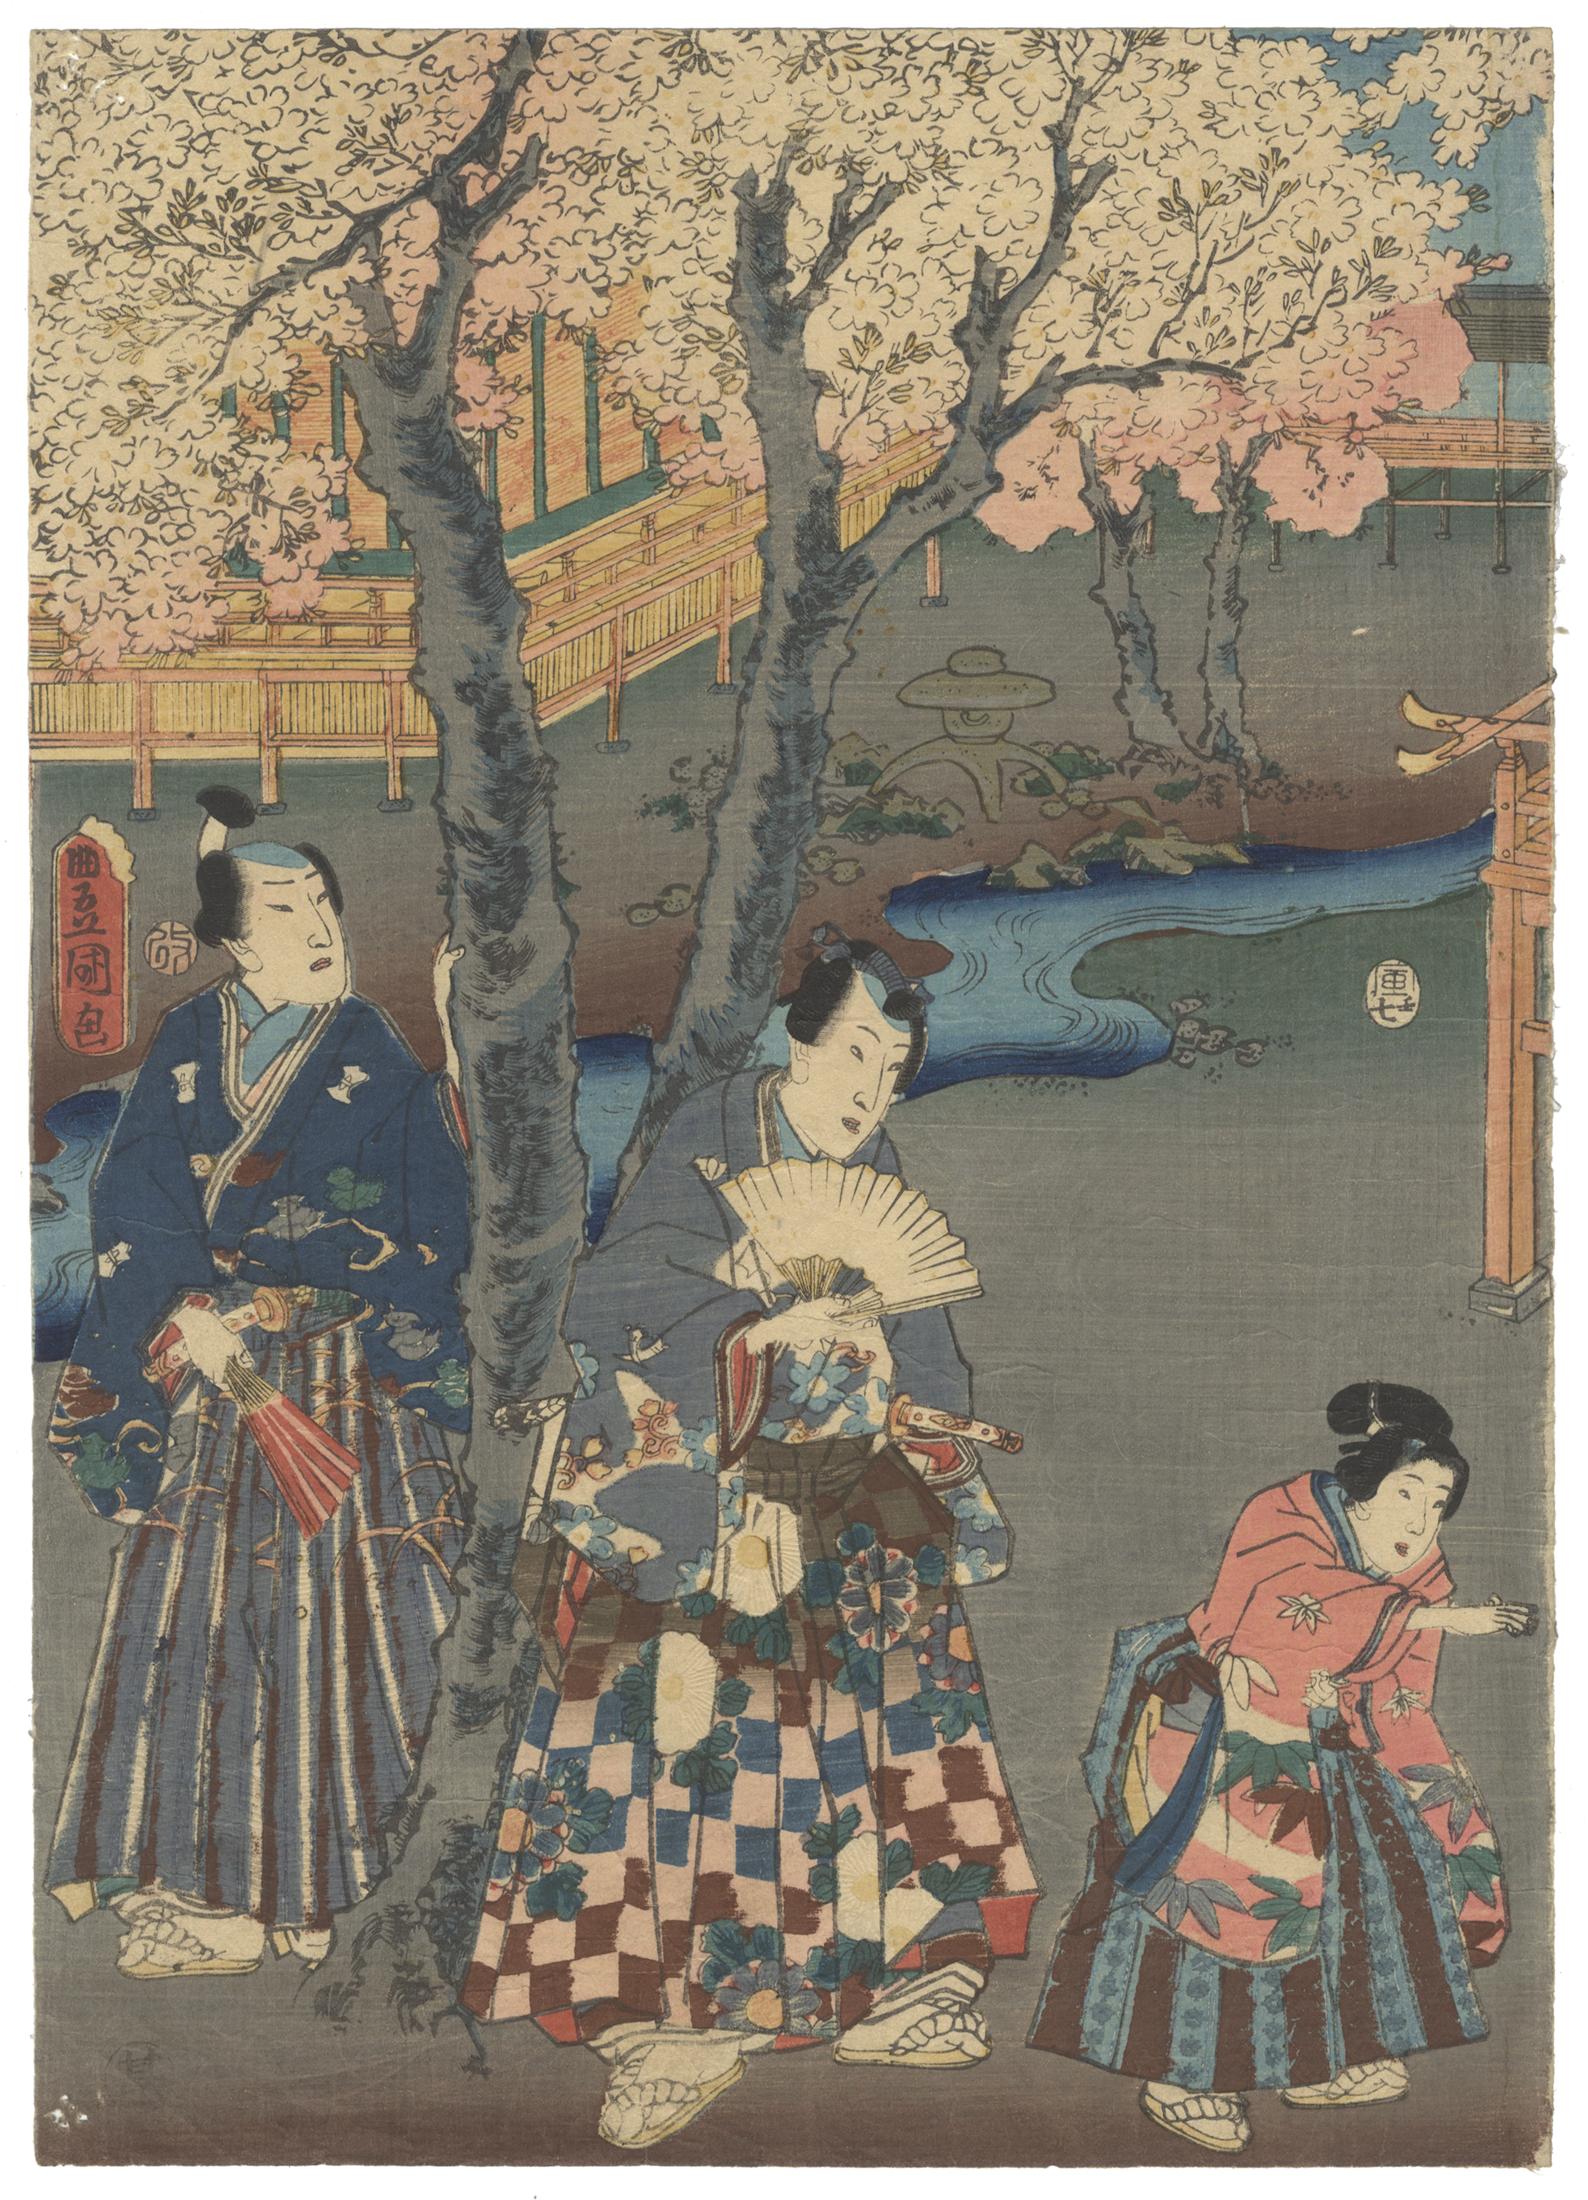 Original Japanese Woodblock Print, Toyokuni III, Tale of Genji, Kemari, Sakura - Brown Landscape Print by Utagawa Kunisada (Toyokuni III)